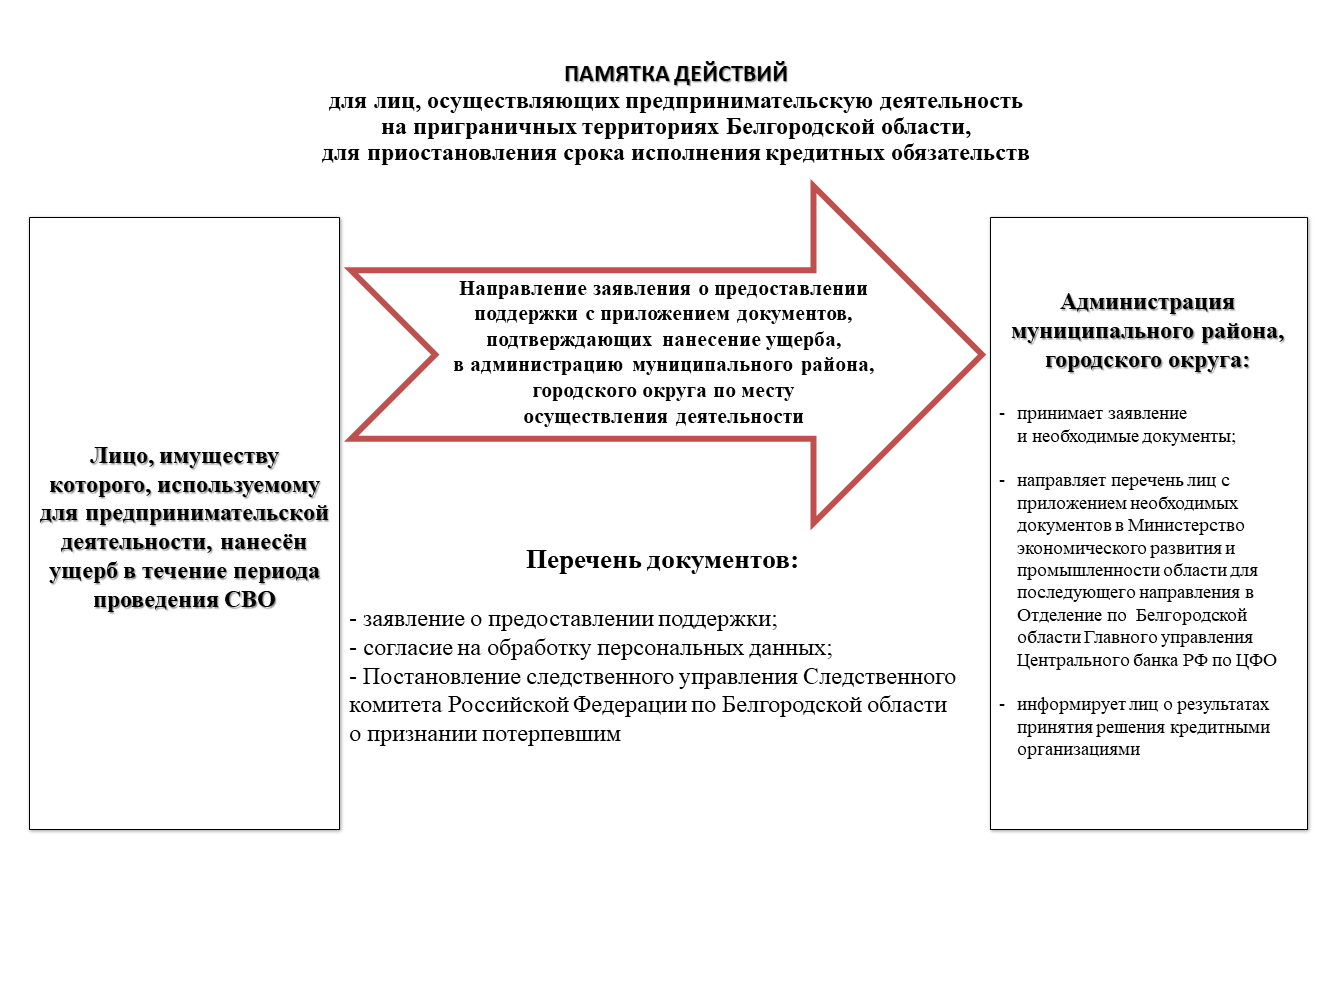 Памятка действий для лиц, осуществляющих предпринимательскую деятельность на приграничных территориях Белгородской области для приостановления срока исполнения кредитных обязательств.